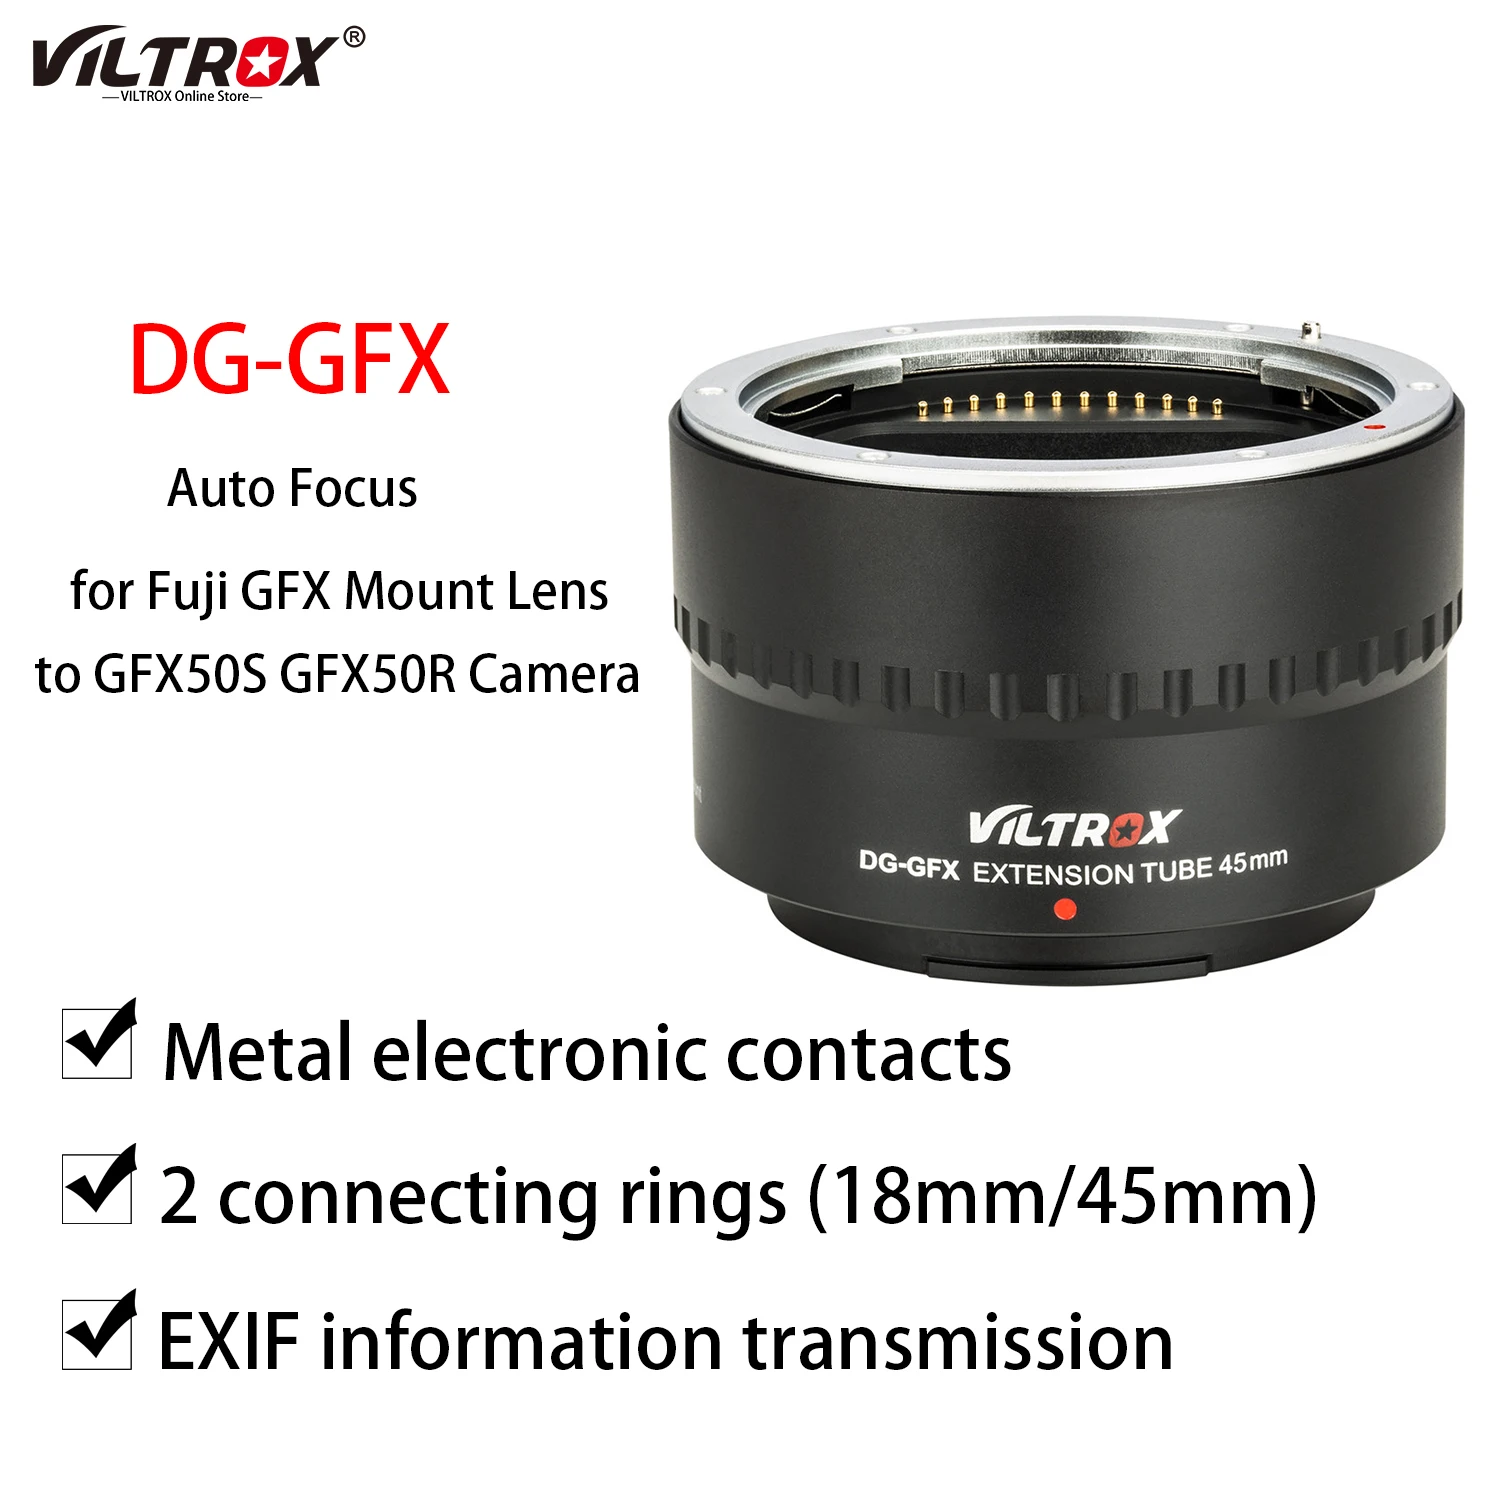 

Кольцо-адаптер Viltrox для объектива диаметром 45 мм с автофокусом и макросъемкой для камеры среднего формата Fuji GFX 50S 50R GFX G